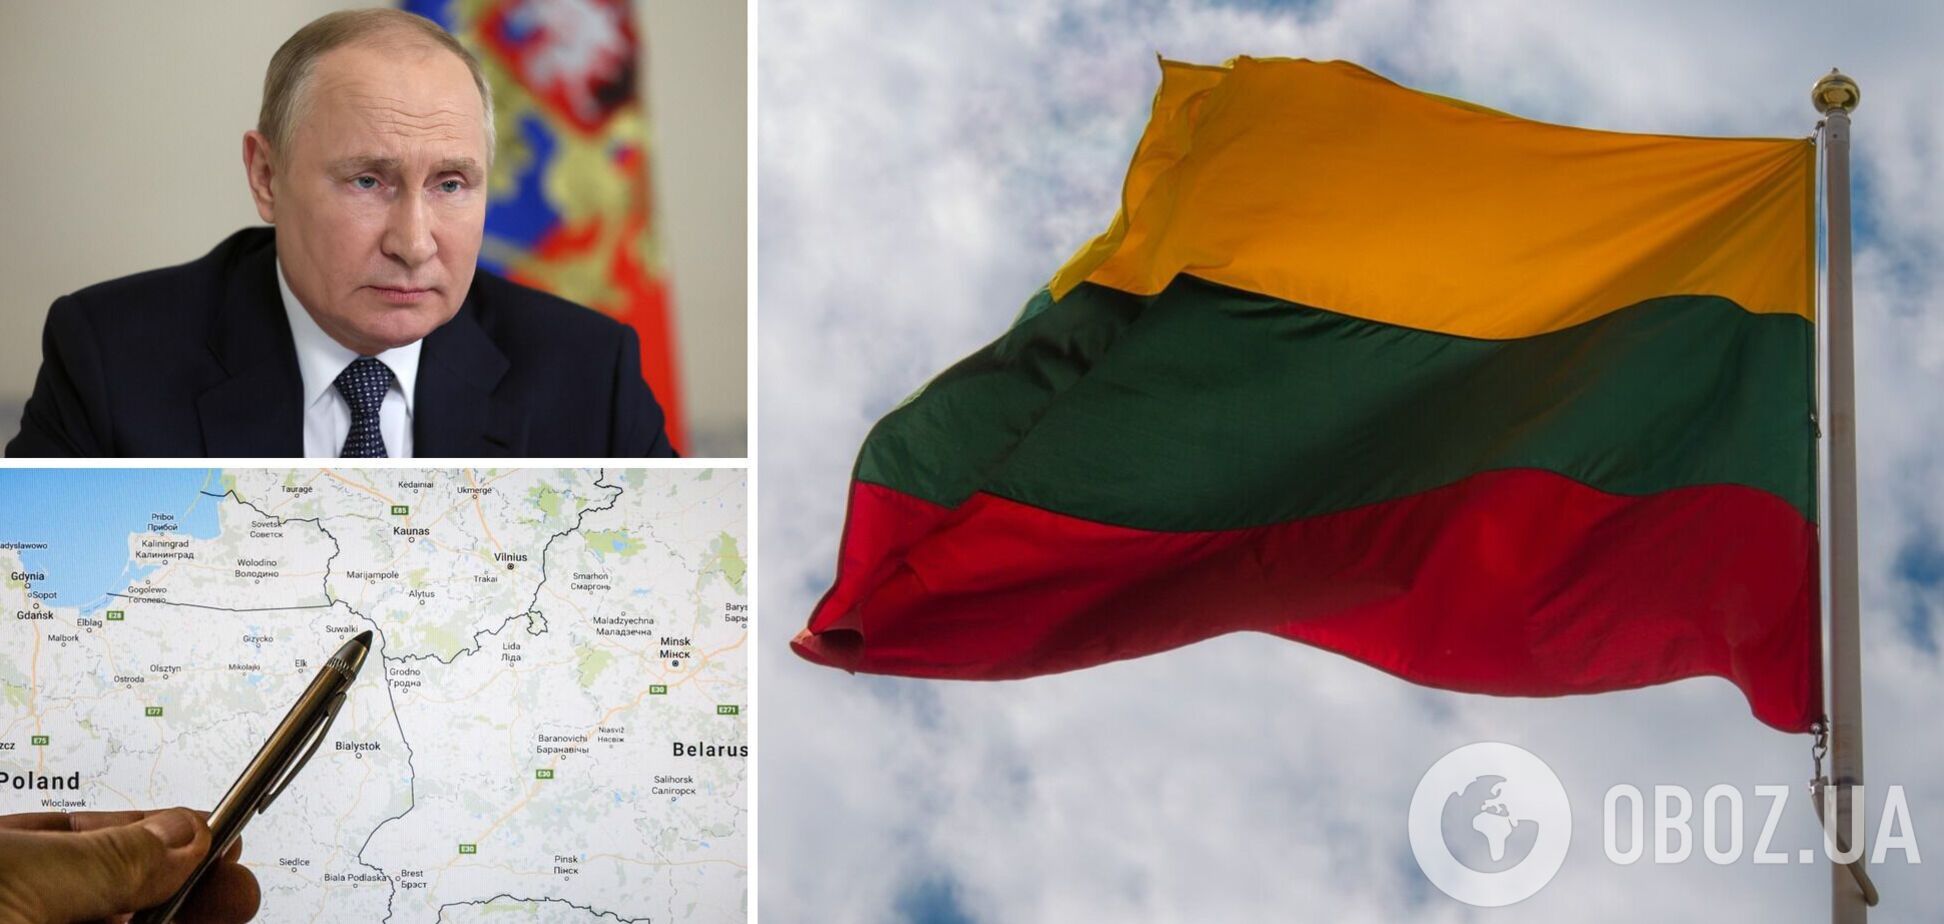 Решат ситуацию 'любым образом': как Кремль 'отомстит' Литве за транзитное ограничение Калининграда